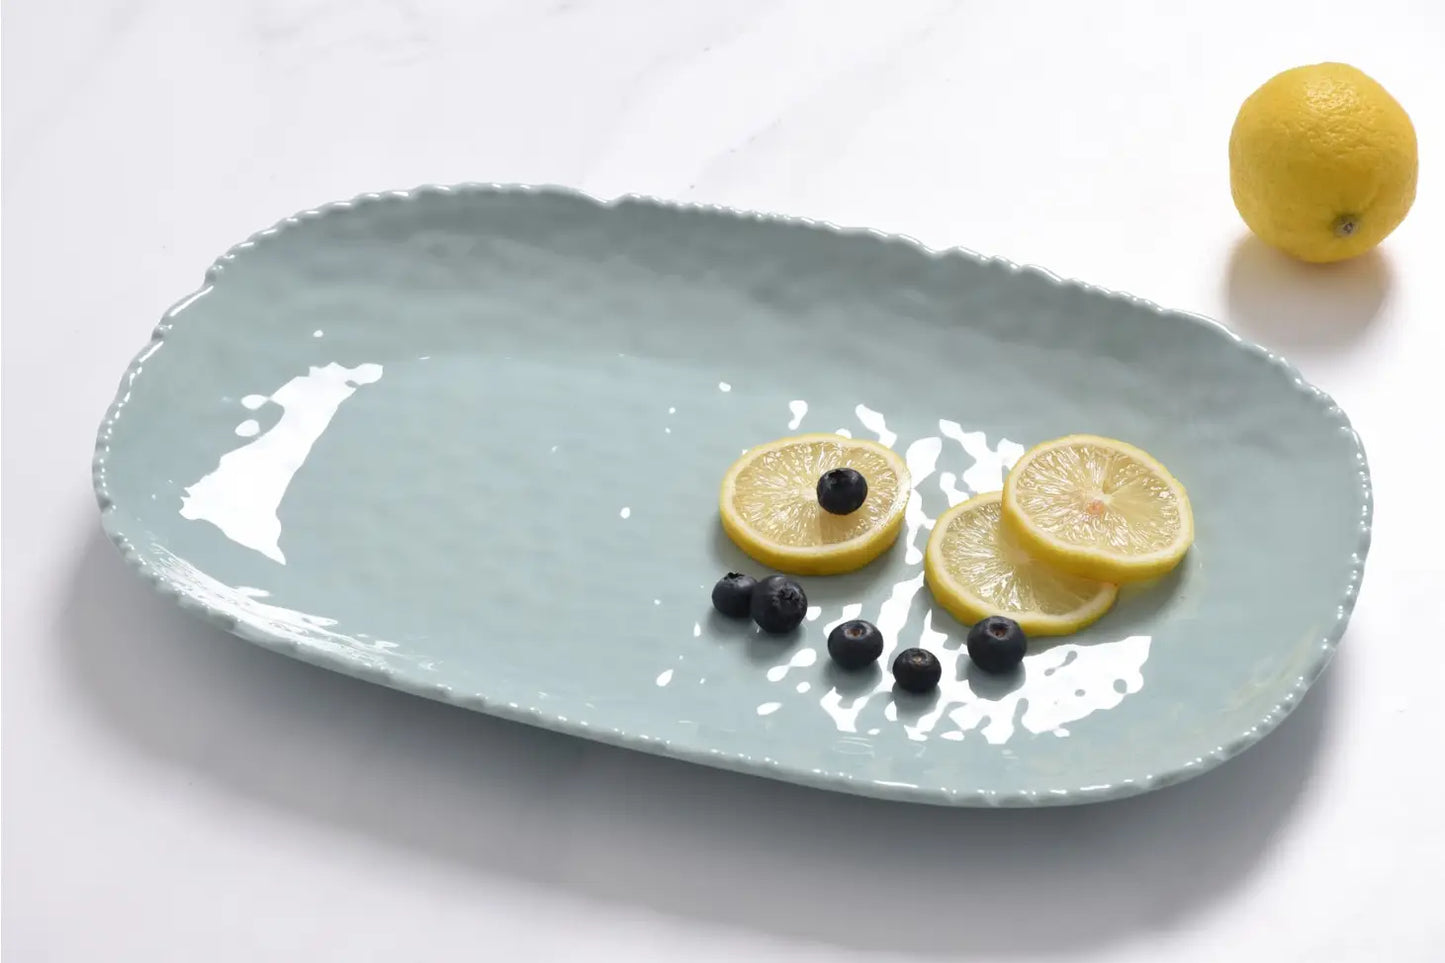 Medium Serving Platter - Aqua